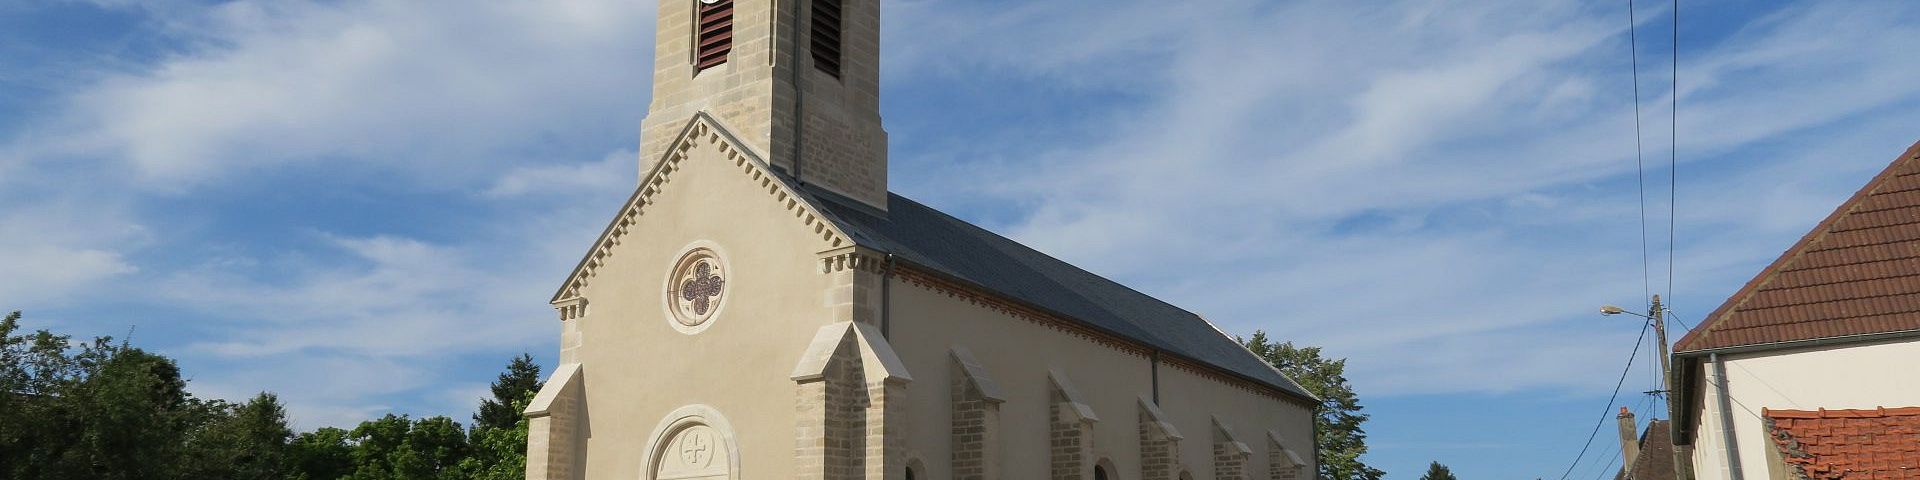 Montot - Eglise Saint-Rémi (21)